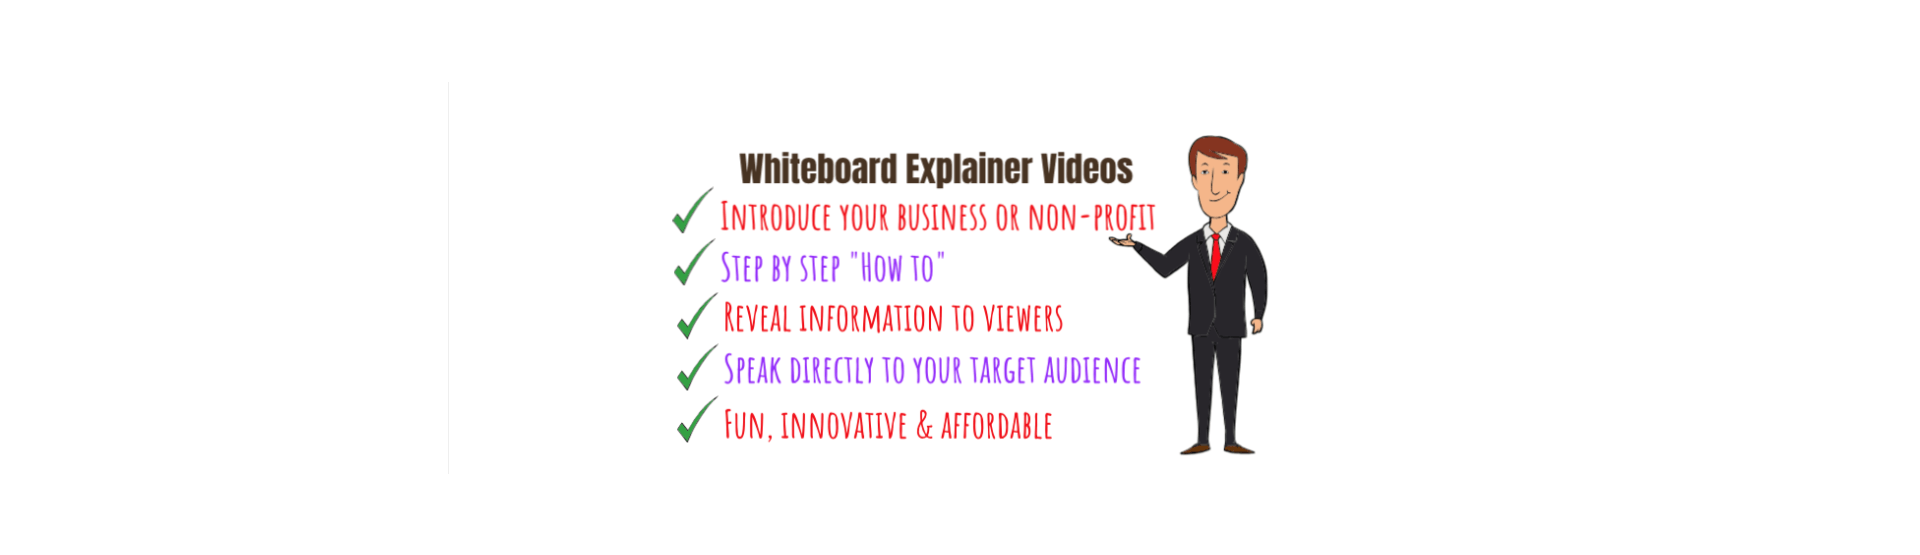 Whiteboard Explainer Video banner.